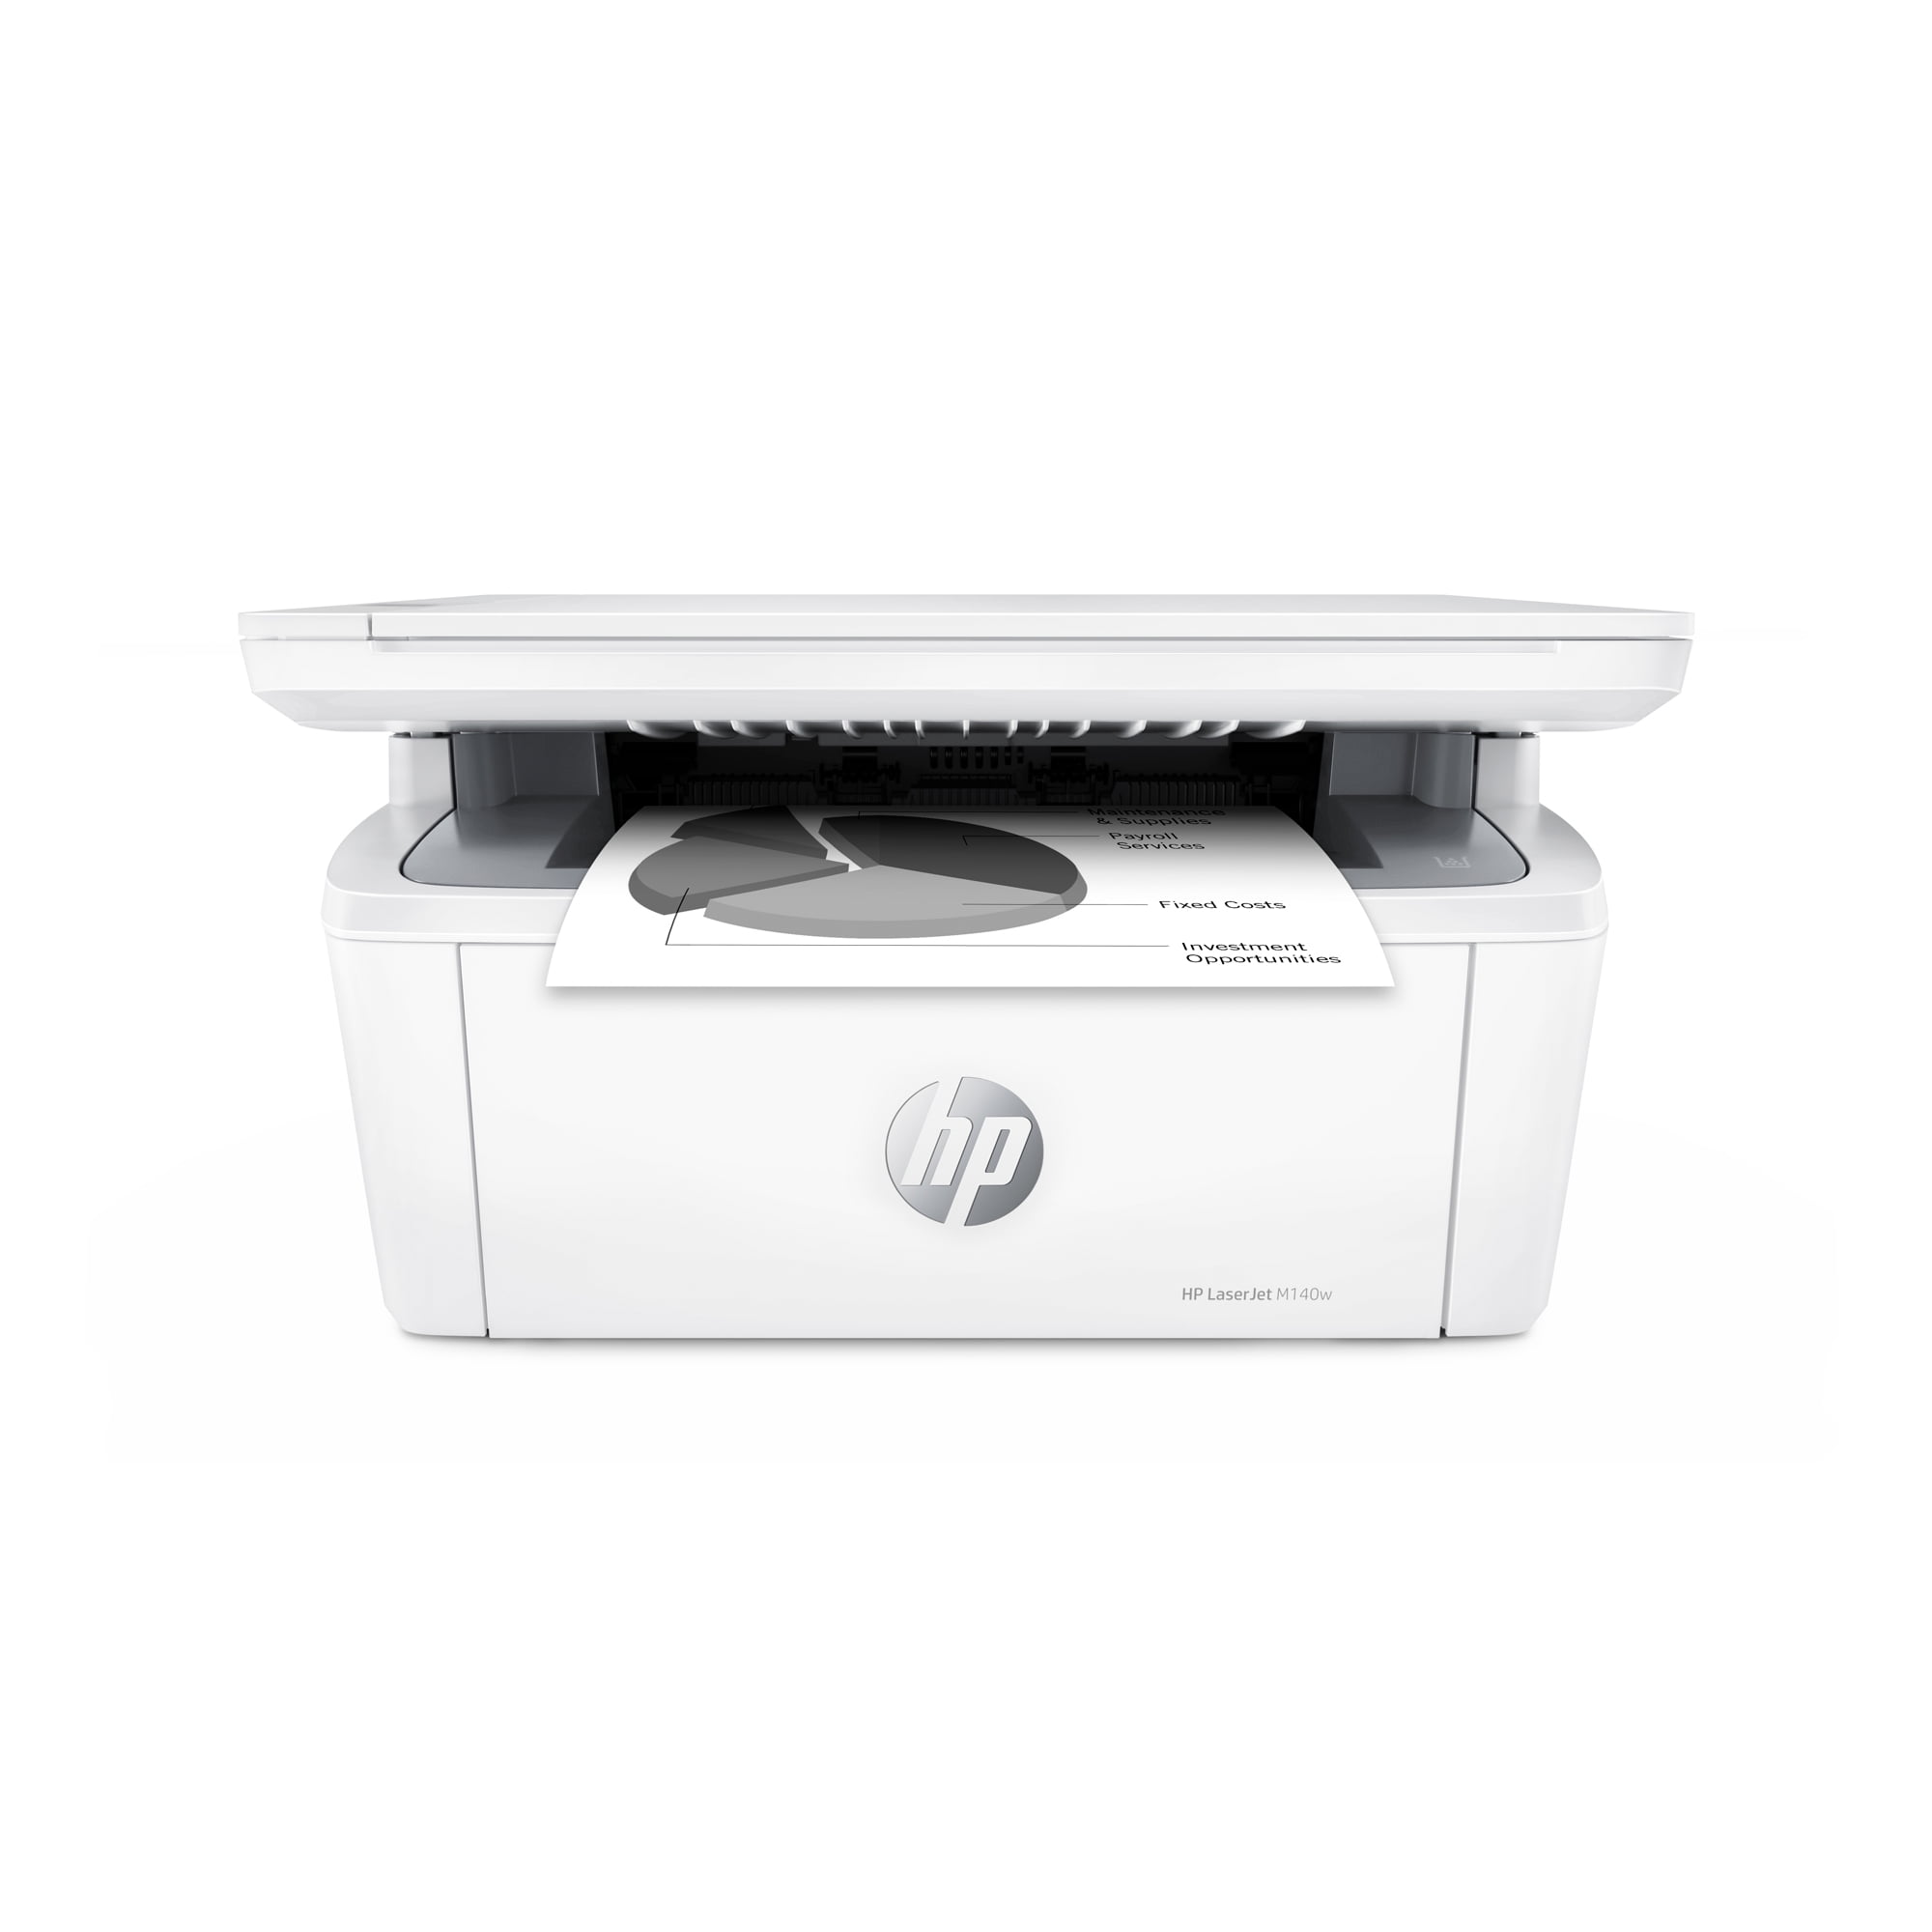 MFP HP LaserJet Pro MFP M28w / A4, printer / scanner / copier, 600dpi,  18ppm, 32Mb, USB, WiFi / W2G55A All in One Office Electronics Computer -  AliExpress